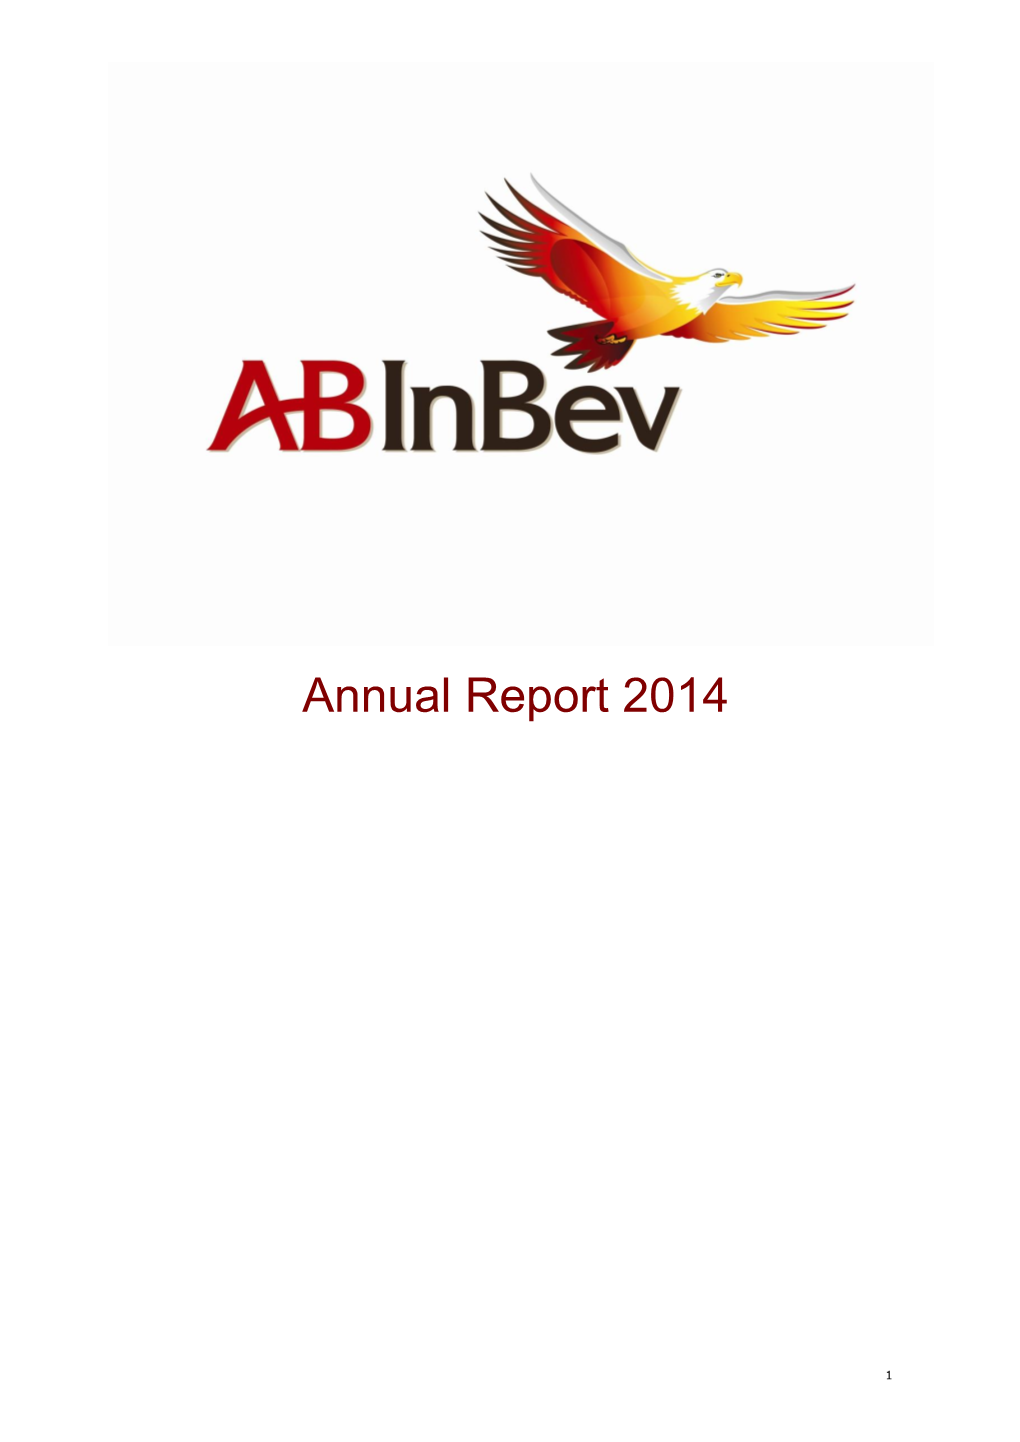 AB Inbev Annual Report (2014)